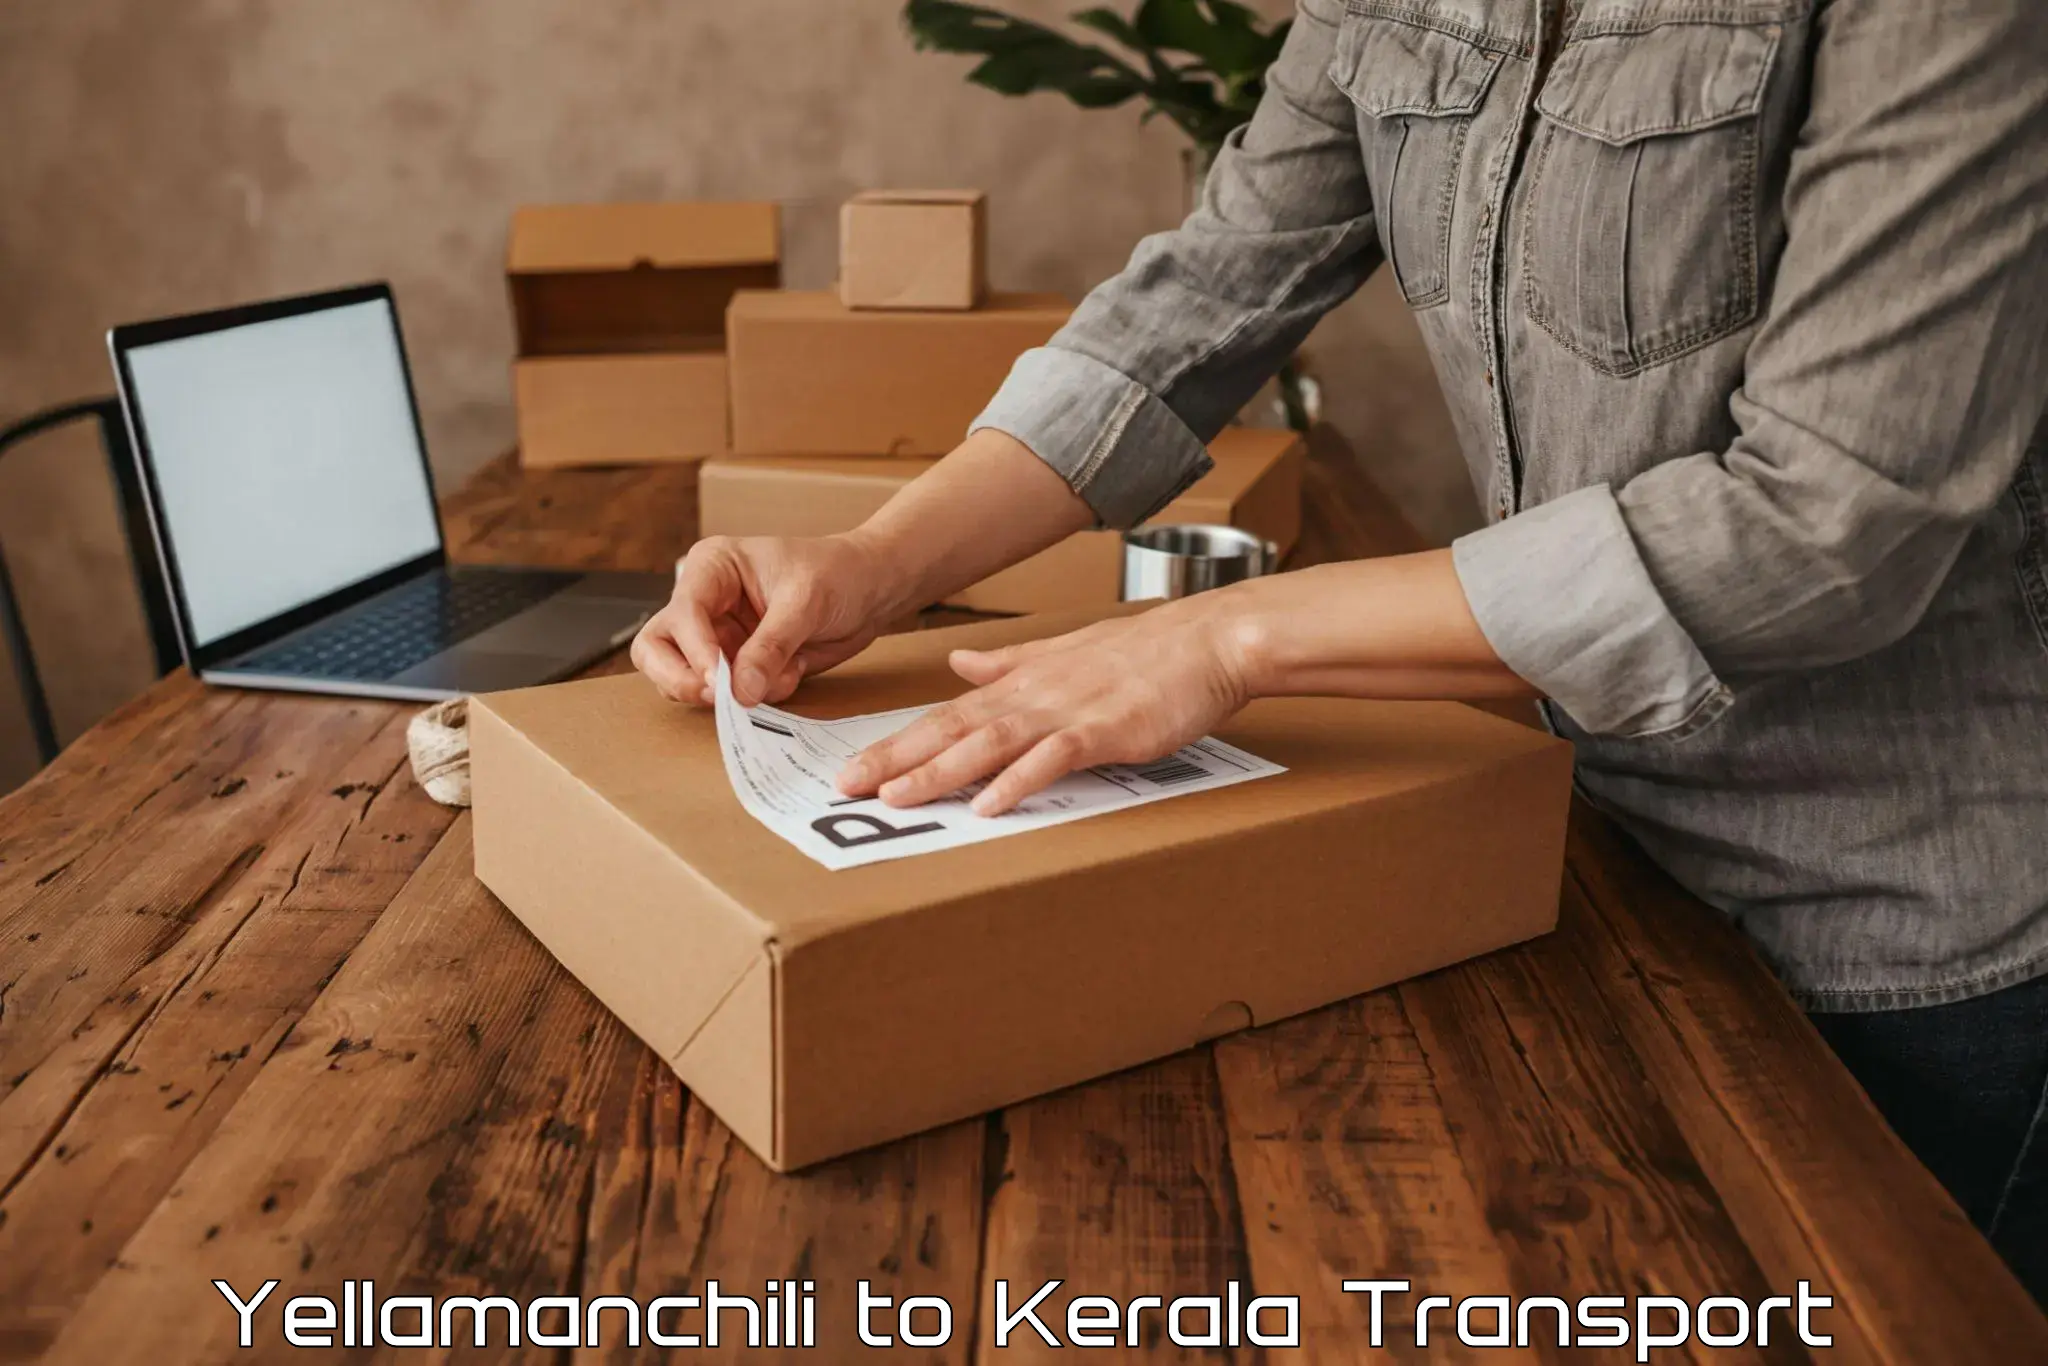 Container transport service Yellamanchili to Karukachal